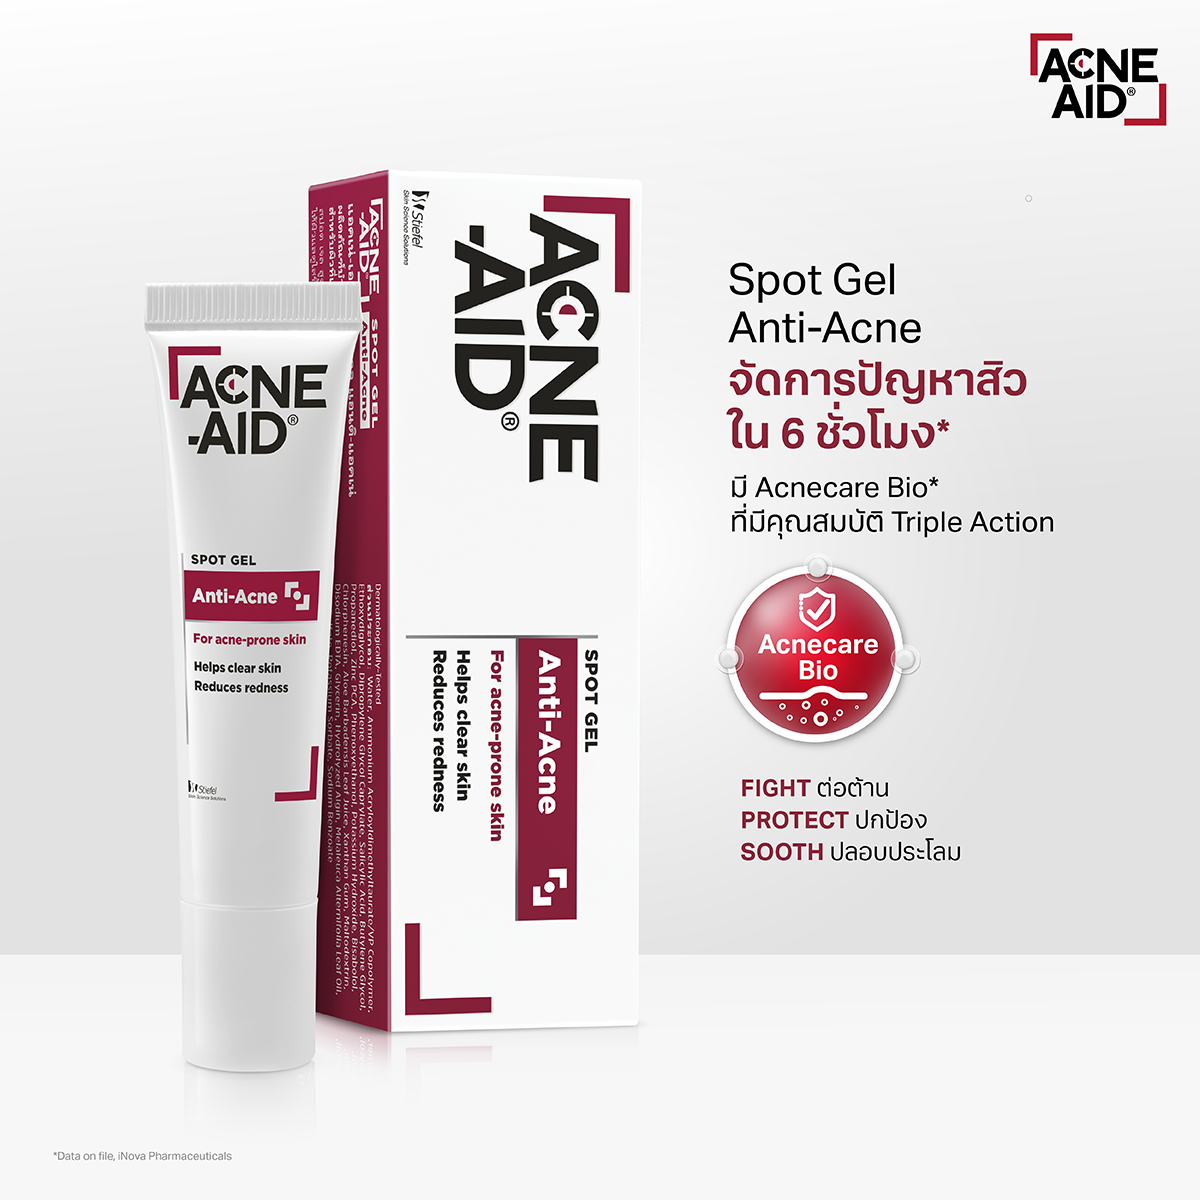 Acne-Aid Spot Gel Anti-Acne 10g เจลแต้มสิว